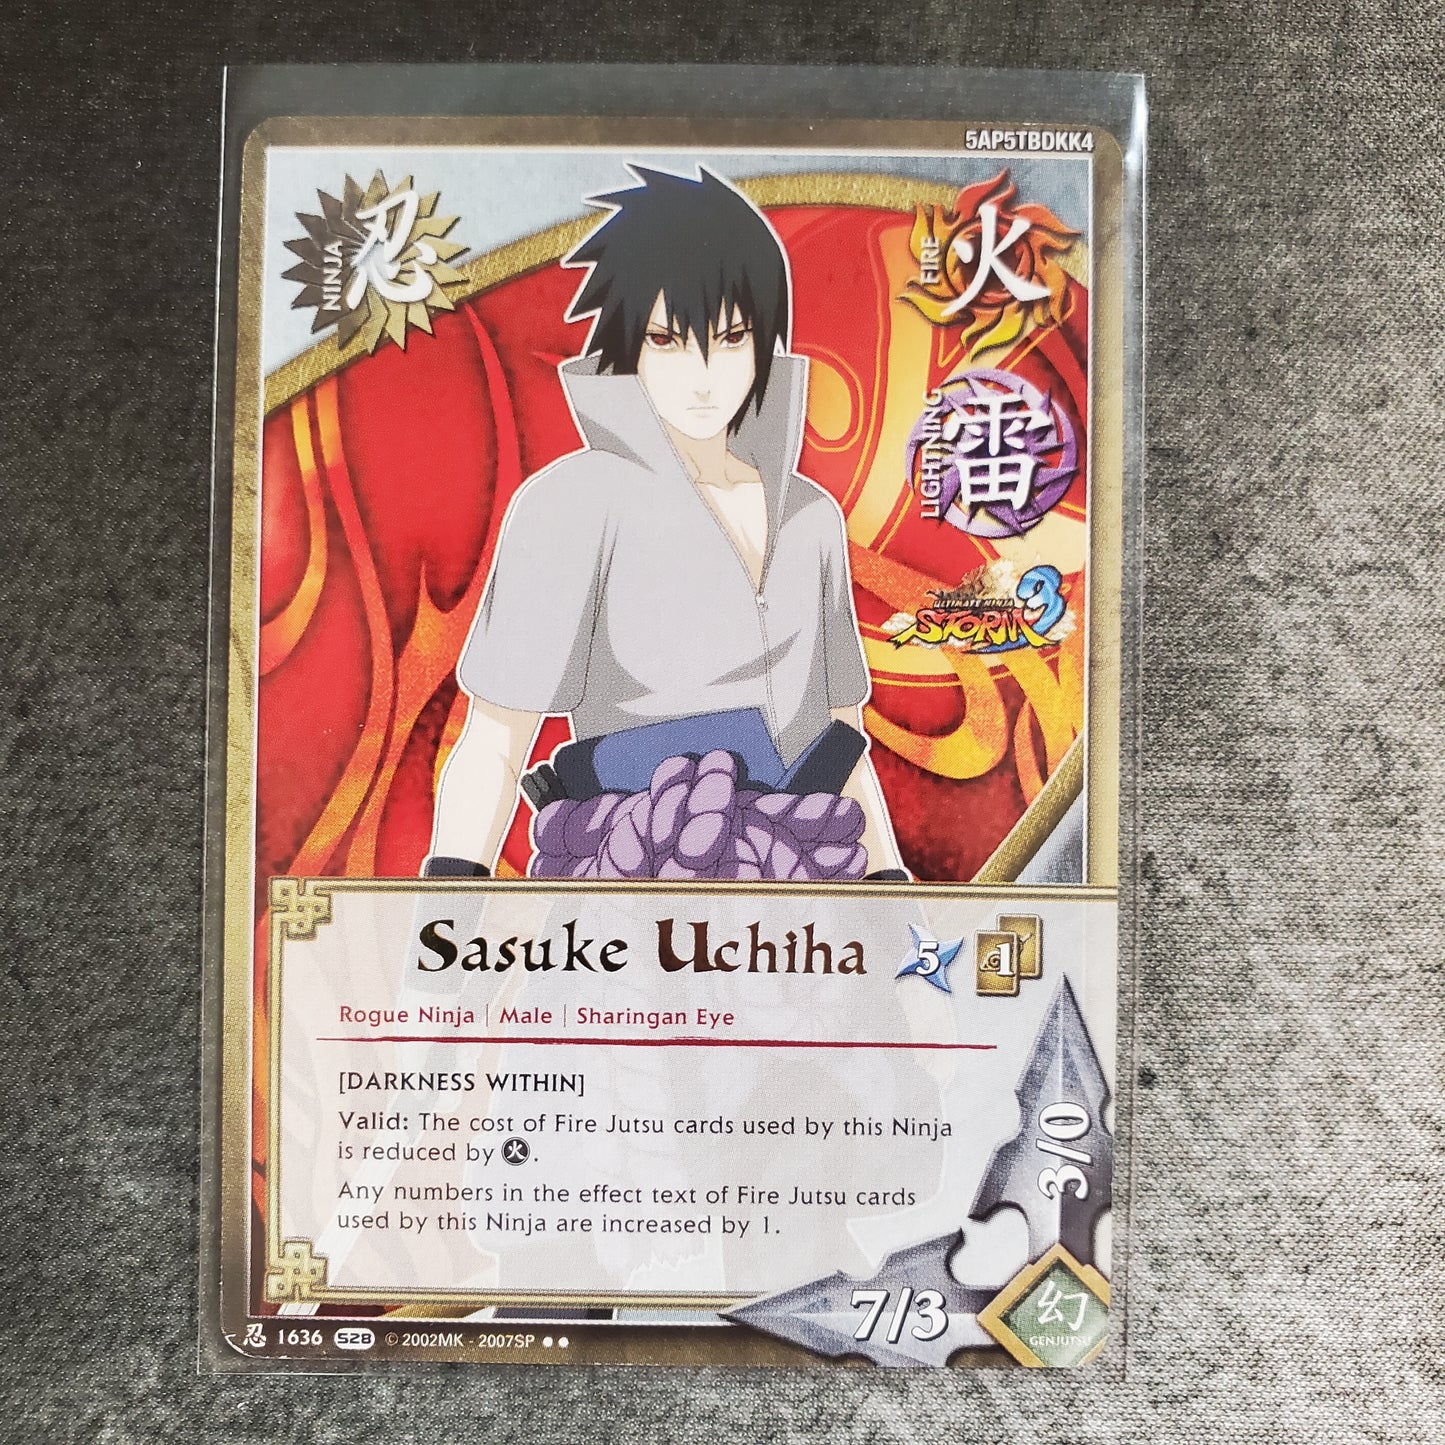 Sasuke Uchiha [Darkness Within] 1636 Rare S28 Ultimate Ninja Storm 3 Naruto CCG